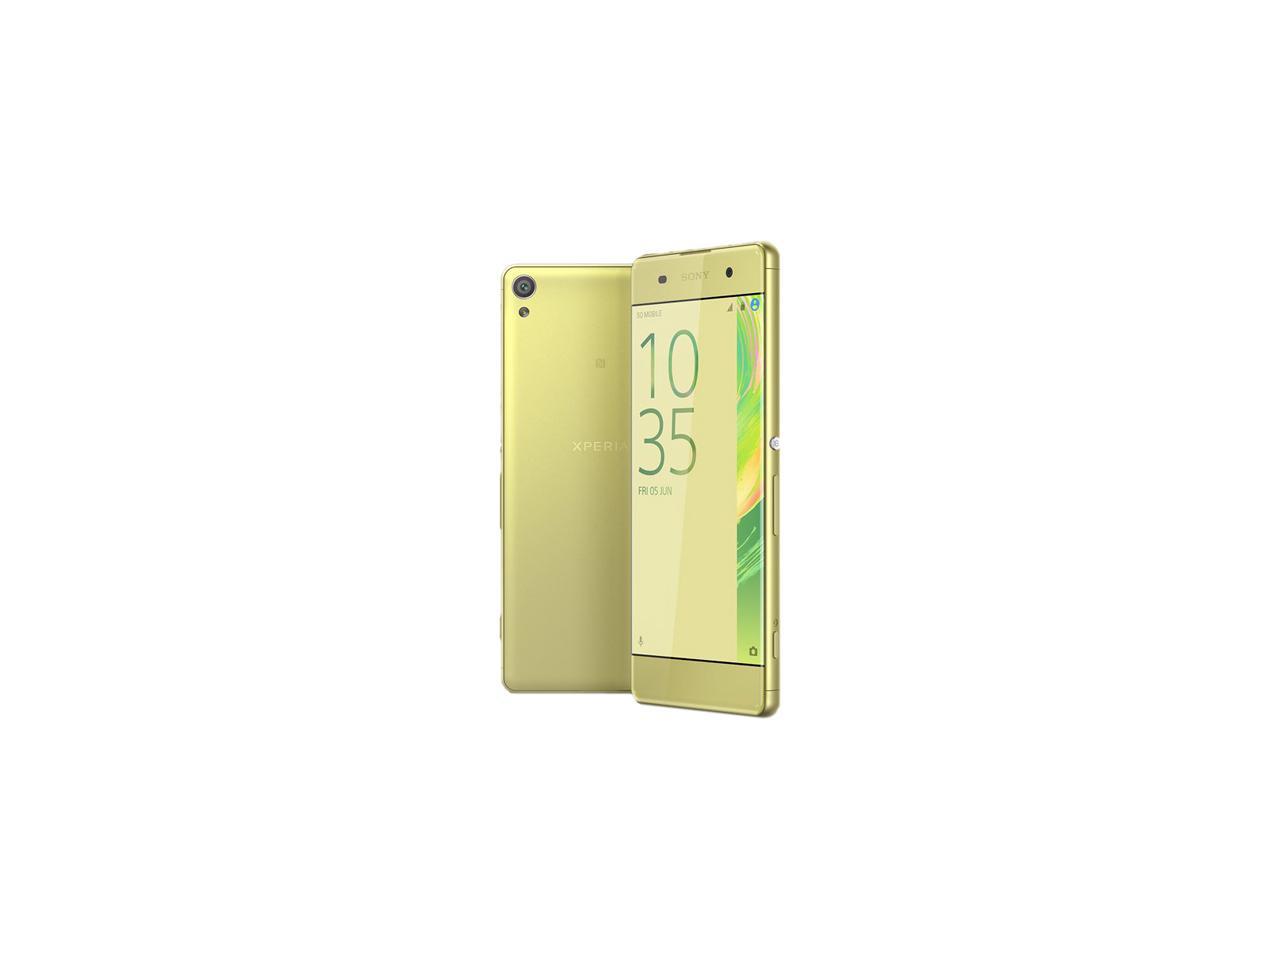 vraag naar maat Dosering Open Box: Sony Xperia XA 5" Unlocked Smartphone - 16GB - US Warranty (Lime  Gold) - Newegg.com